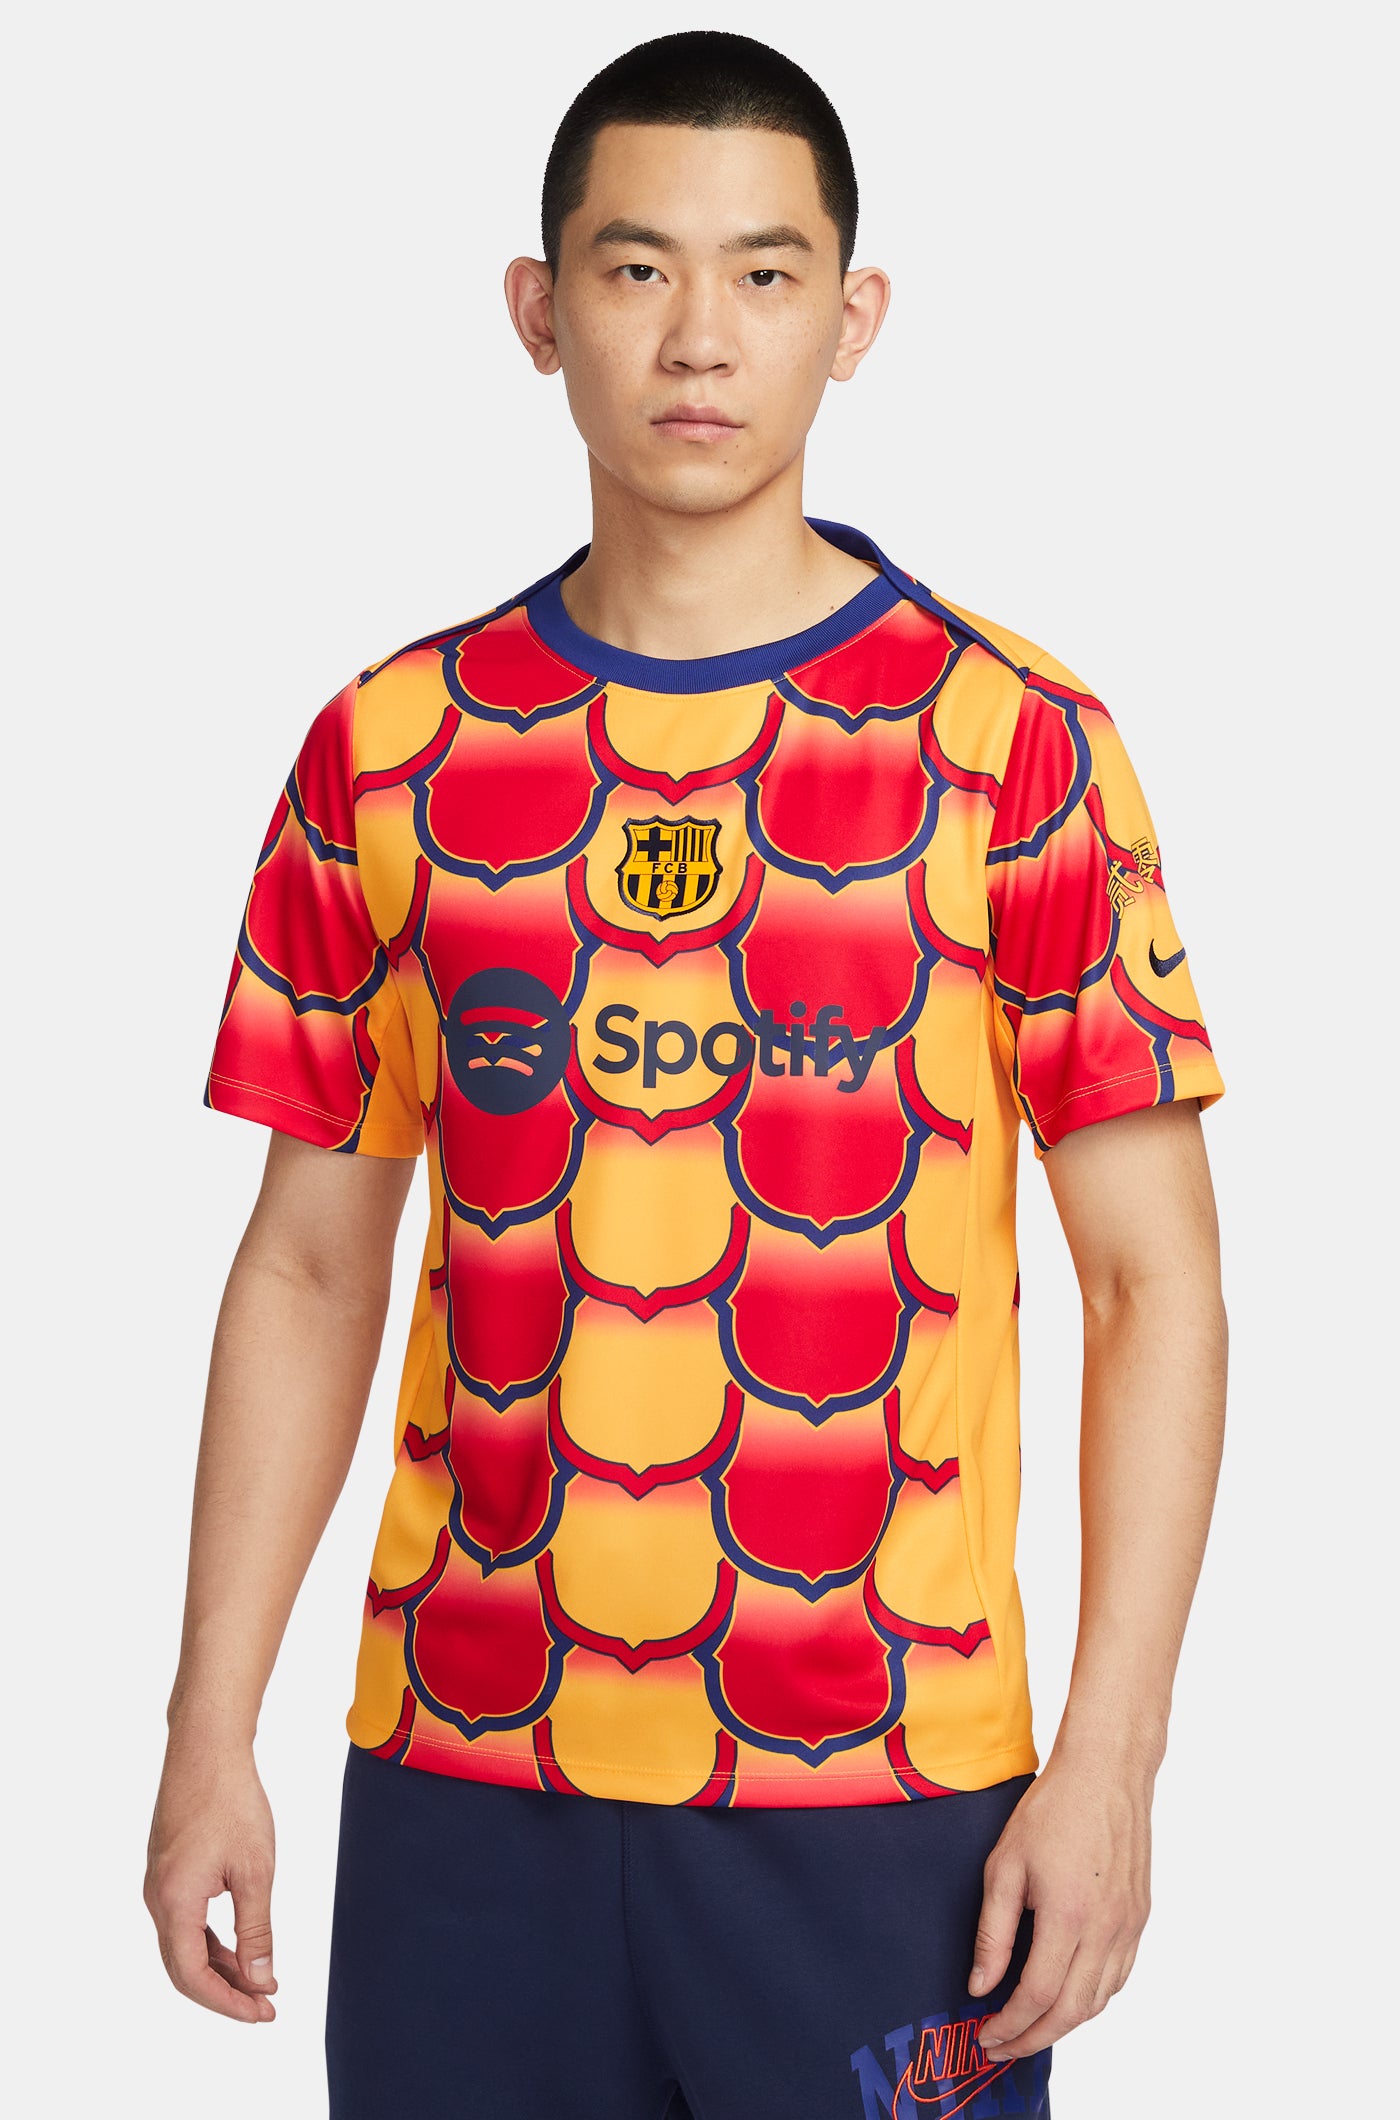 Baloncesto – Barça Official Store Spotify Camp Nou